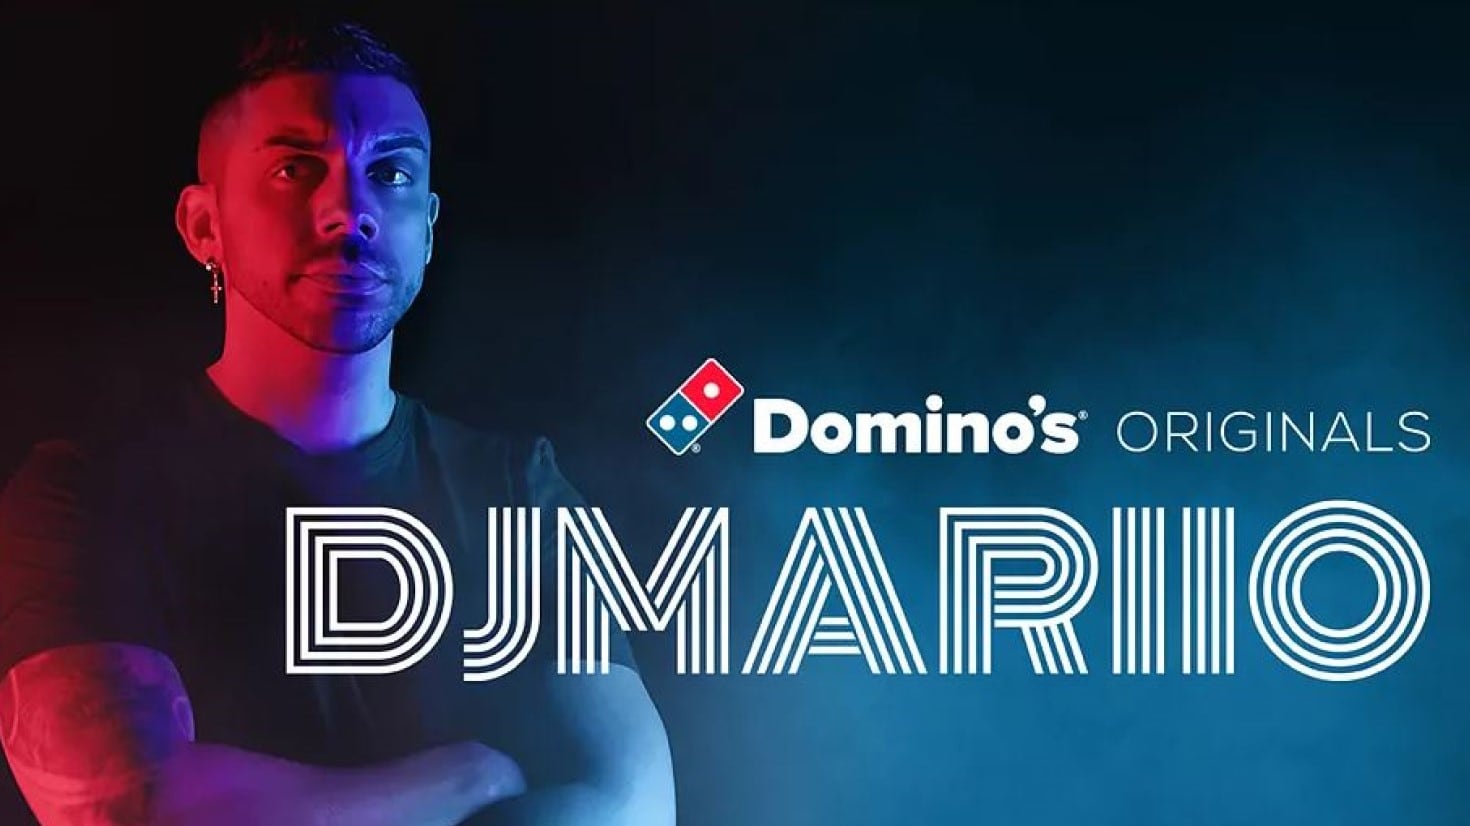 Domino's Originals